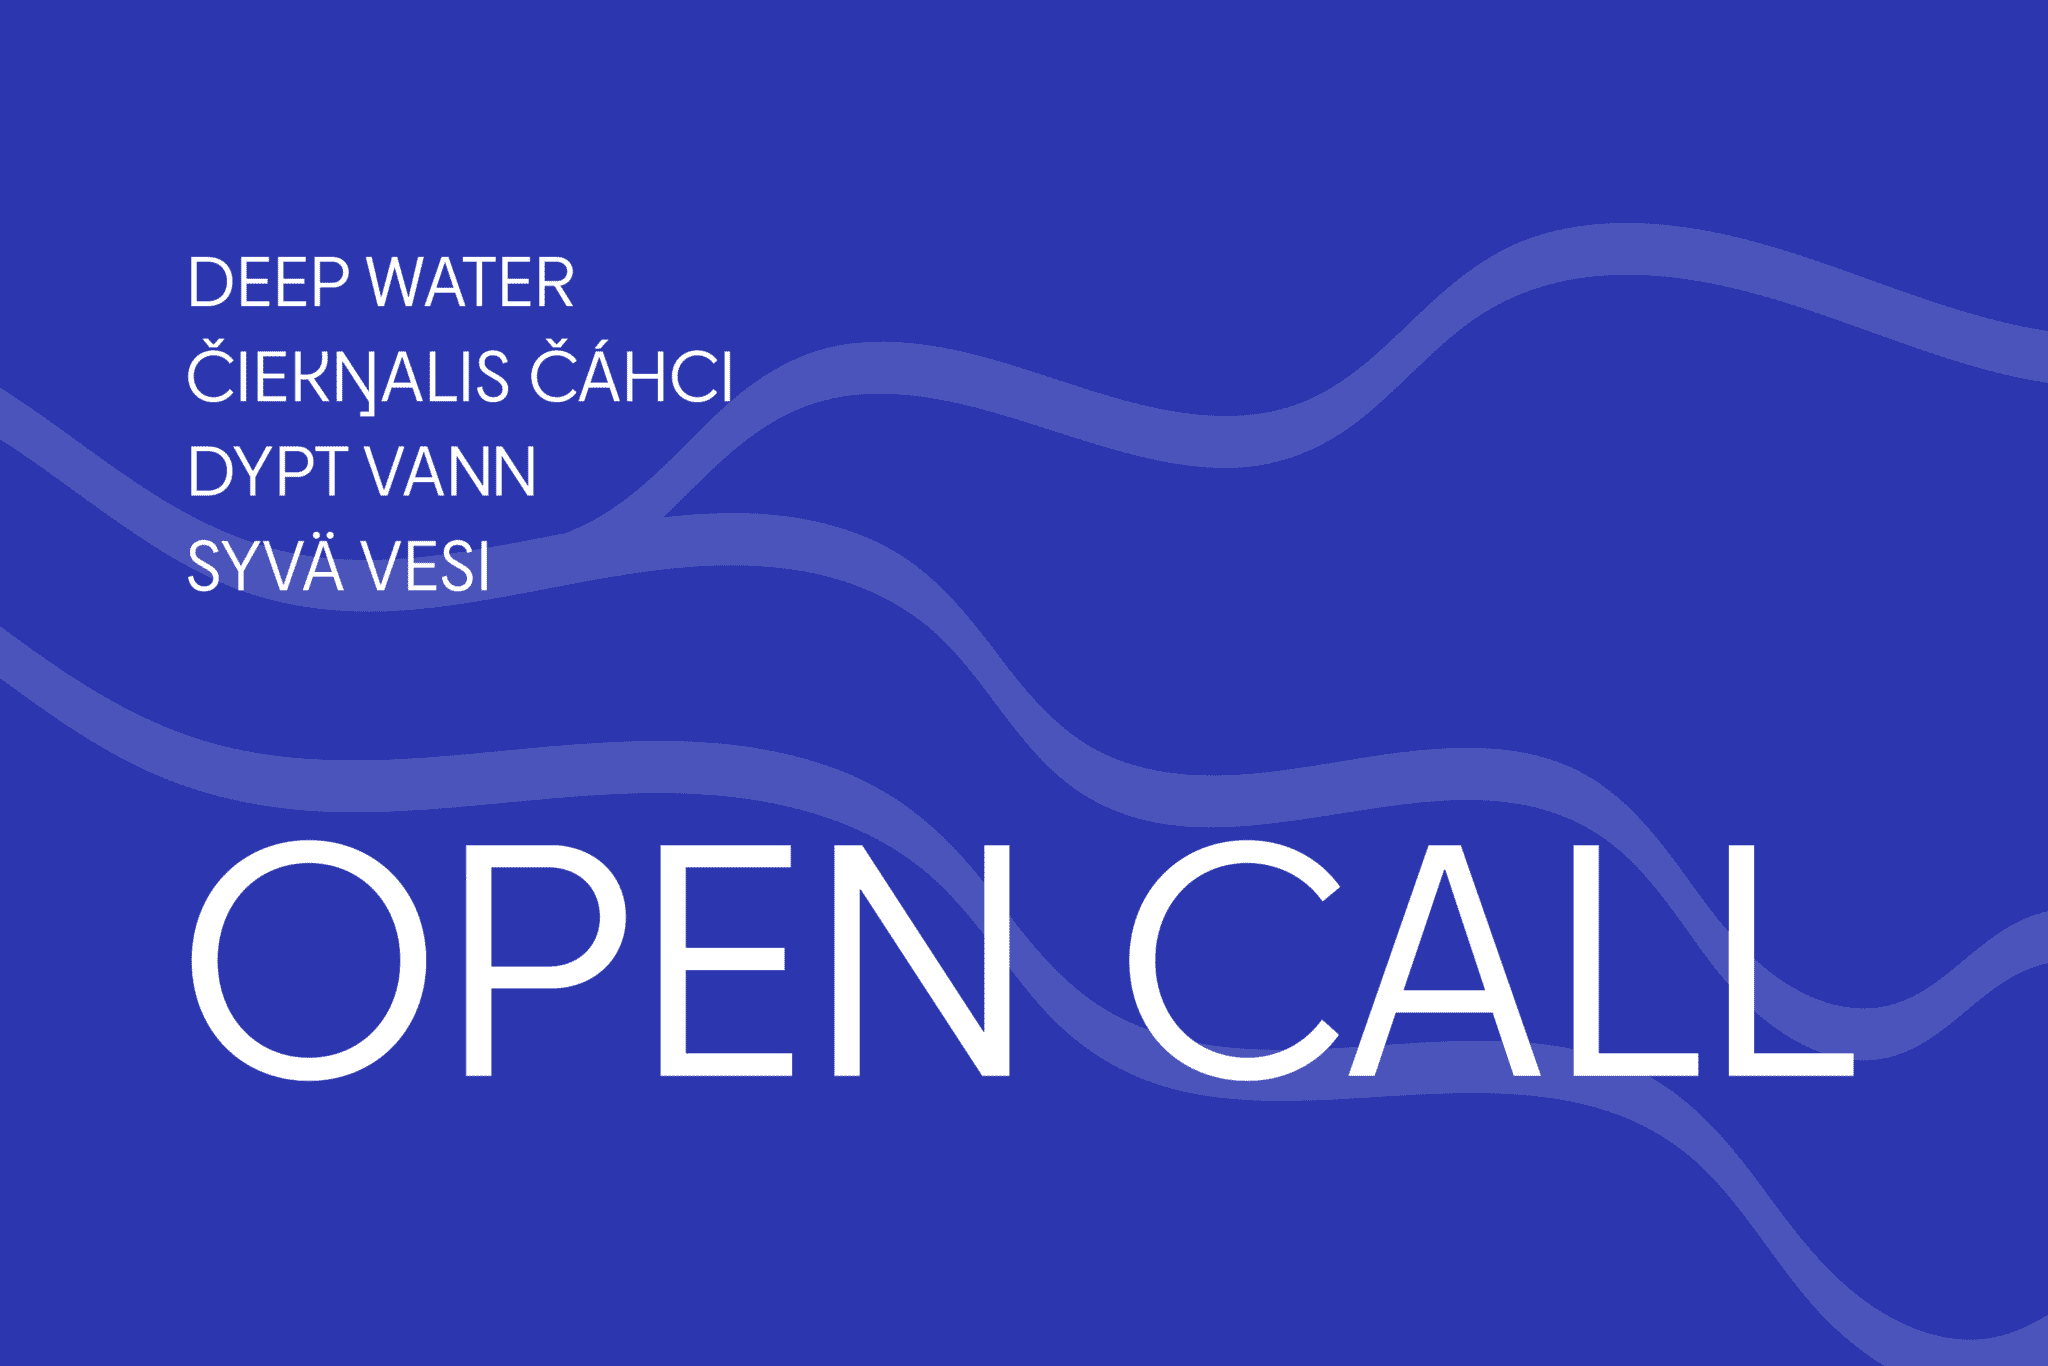 OPEN CALL: DEEP WATER